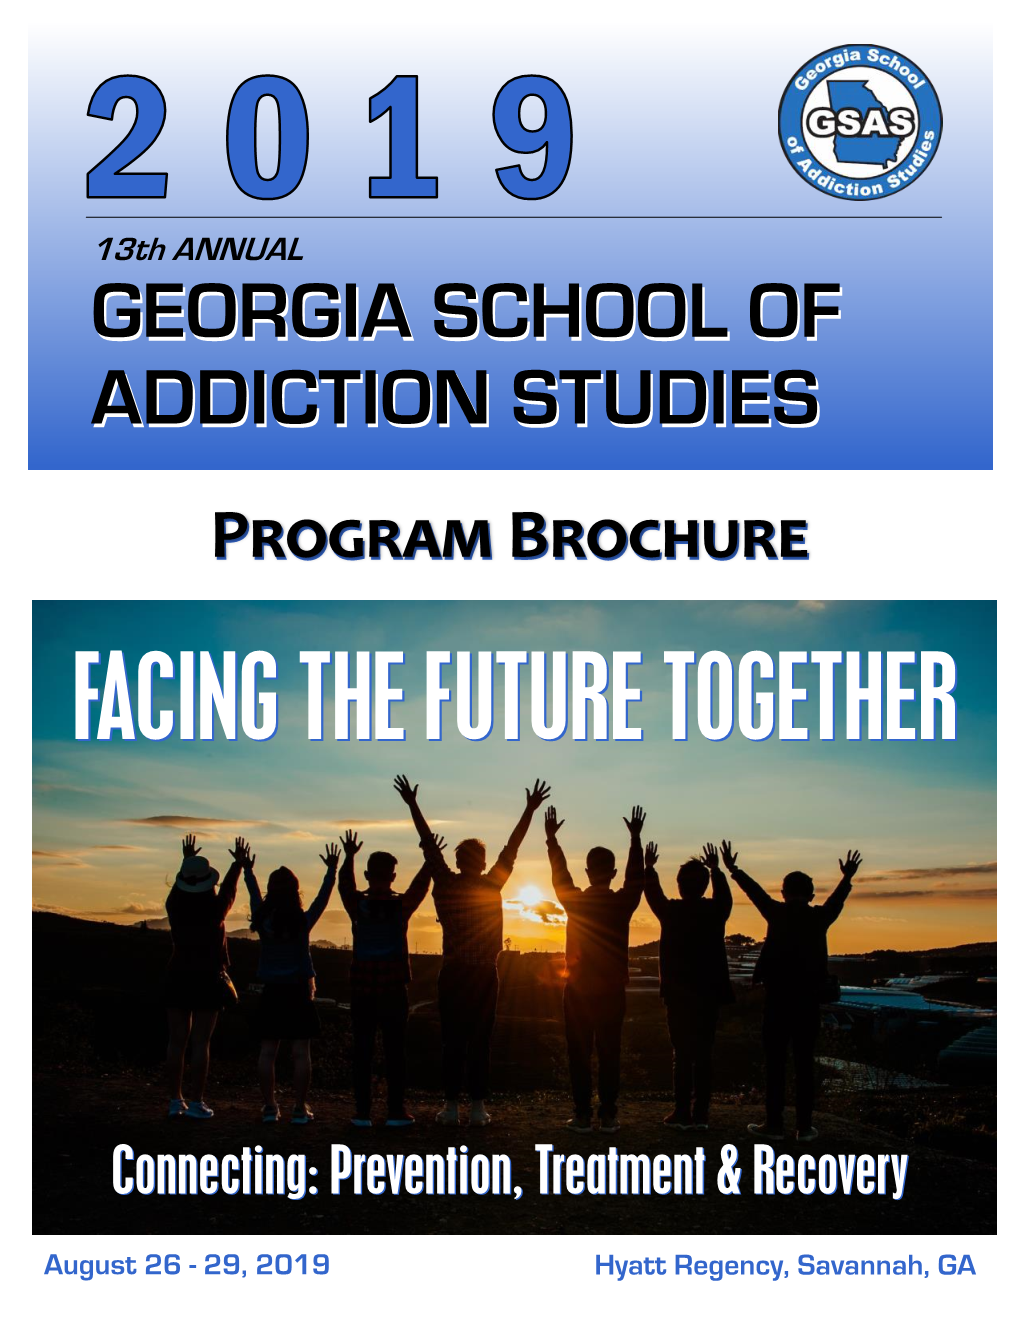 Georgia School of Addiction Studies